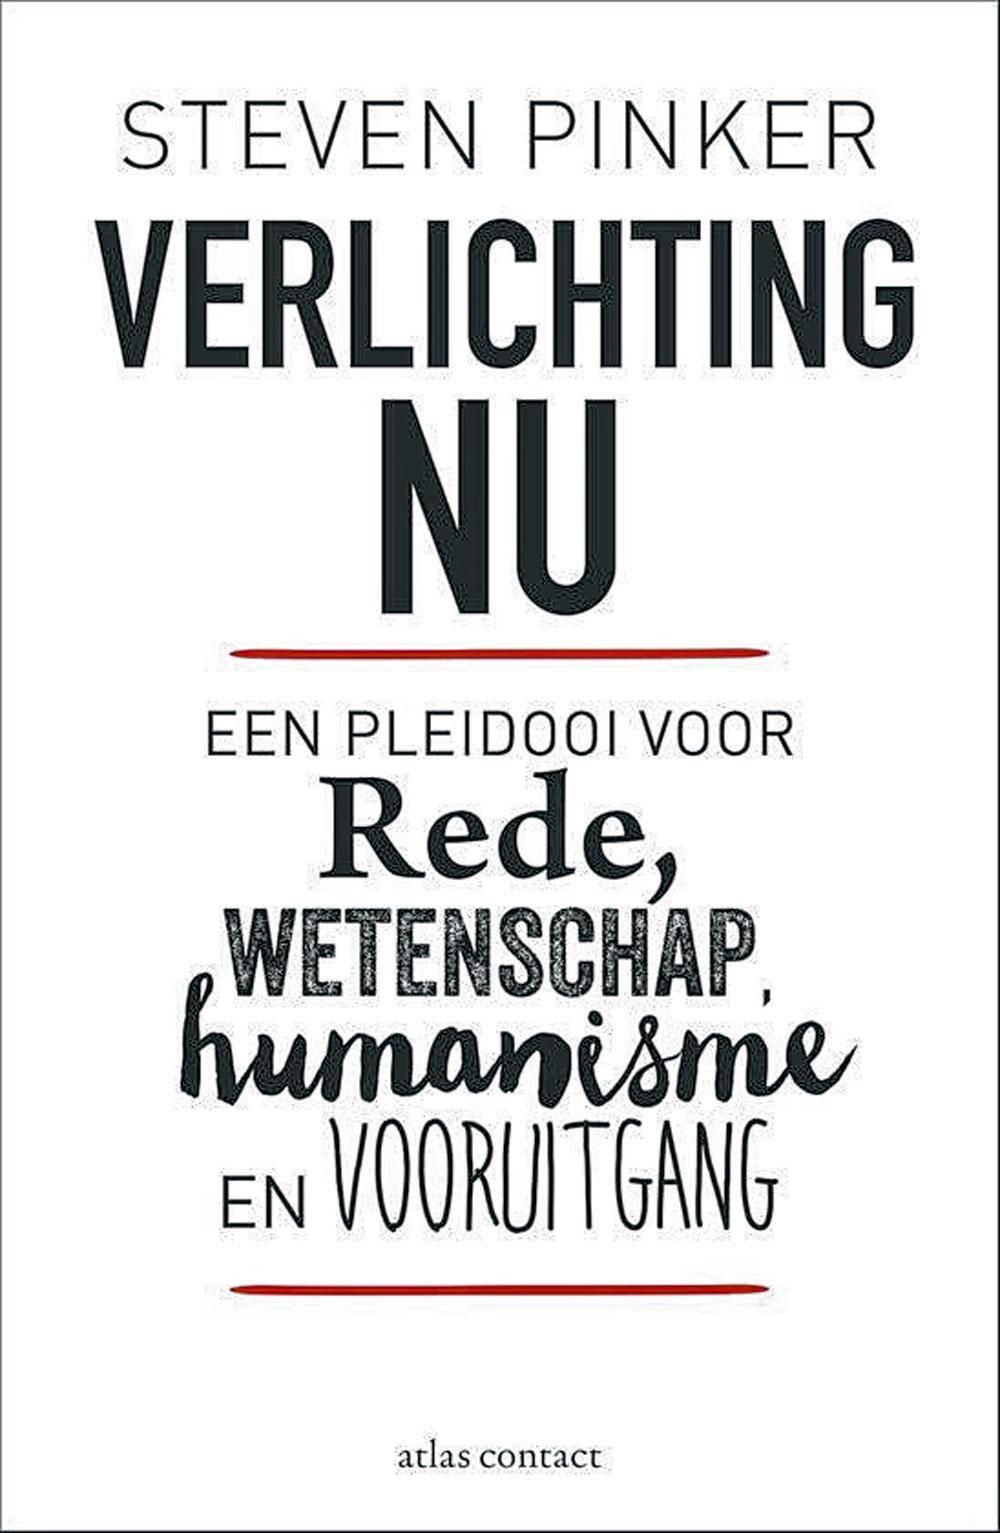 Steven Pinker, Verlichting nu - Een pleidooi voor rede, wetenschap en vooruitgang, vert. Ralph van der Aa, Atlas Contact Amsterdam / Antwerpen, 920 blz., 45 euro.